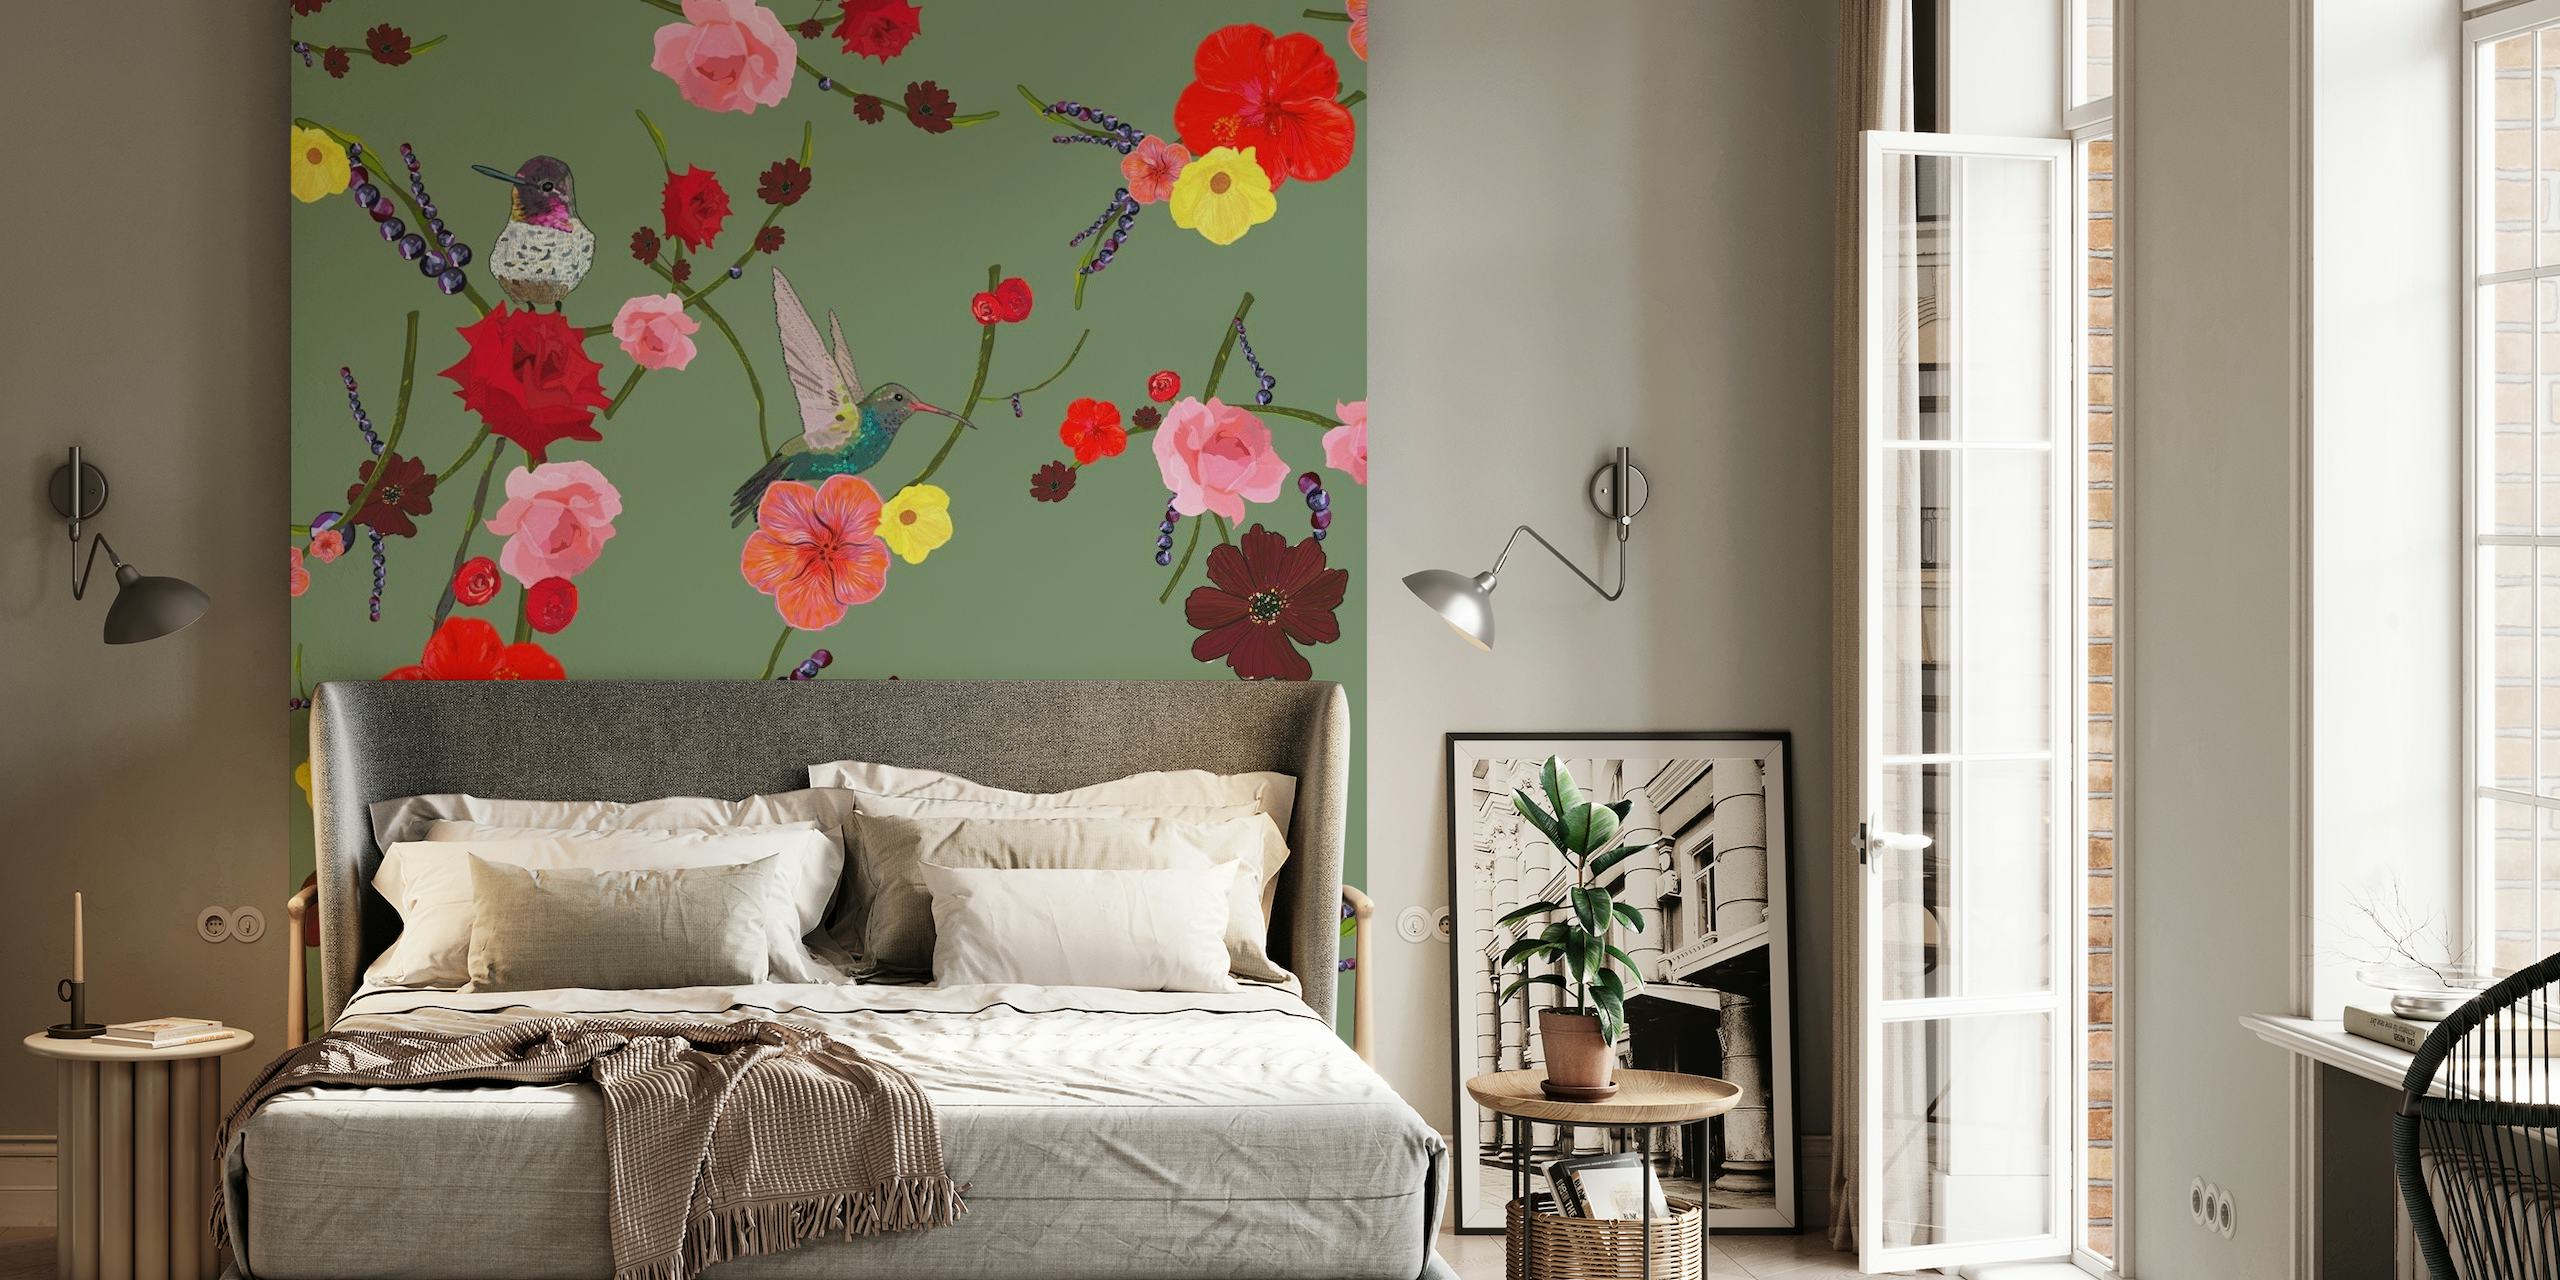 Blomstervægmaleri med fugle og hibiscusroser på en grøn baggrund